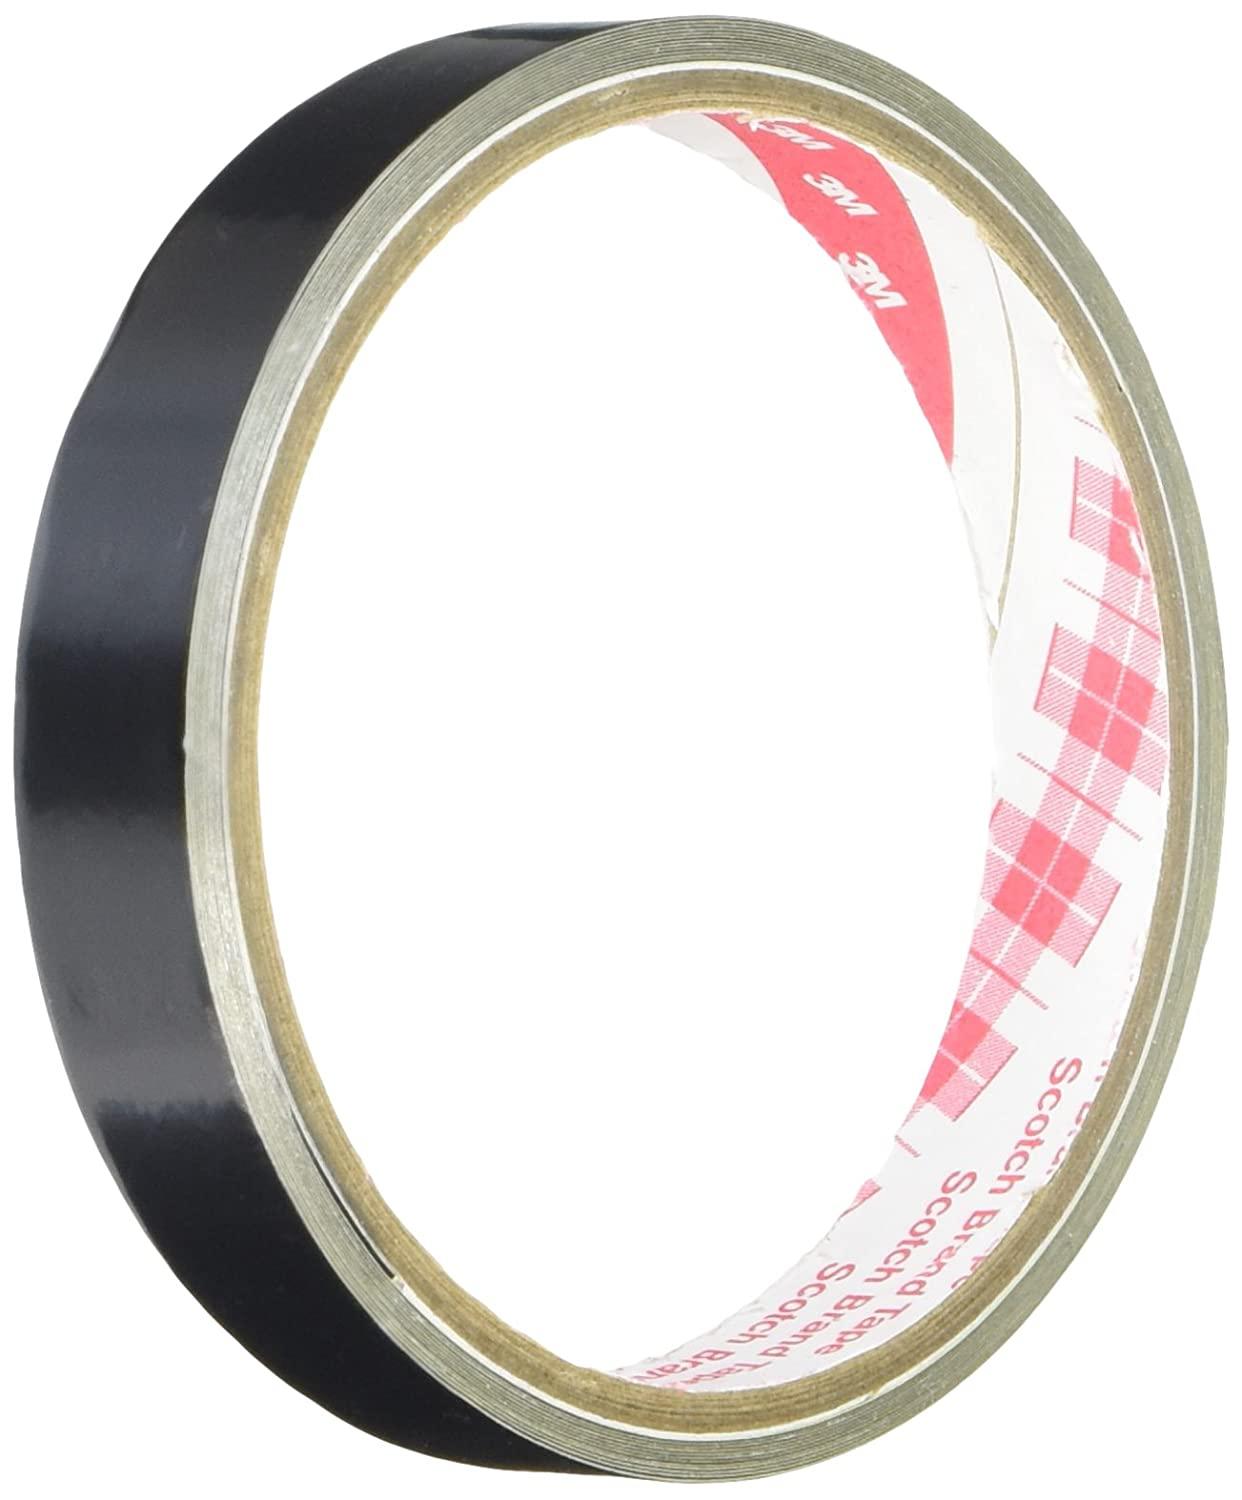 マクセル スリオンテック アルミクラフトテープ No.9800 50mm×50m 20巻  粘着力が高い 重ね貼りができる 空調ダクト 断熱材料の目地シール用に - 2